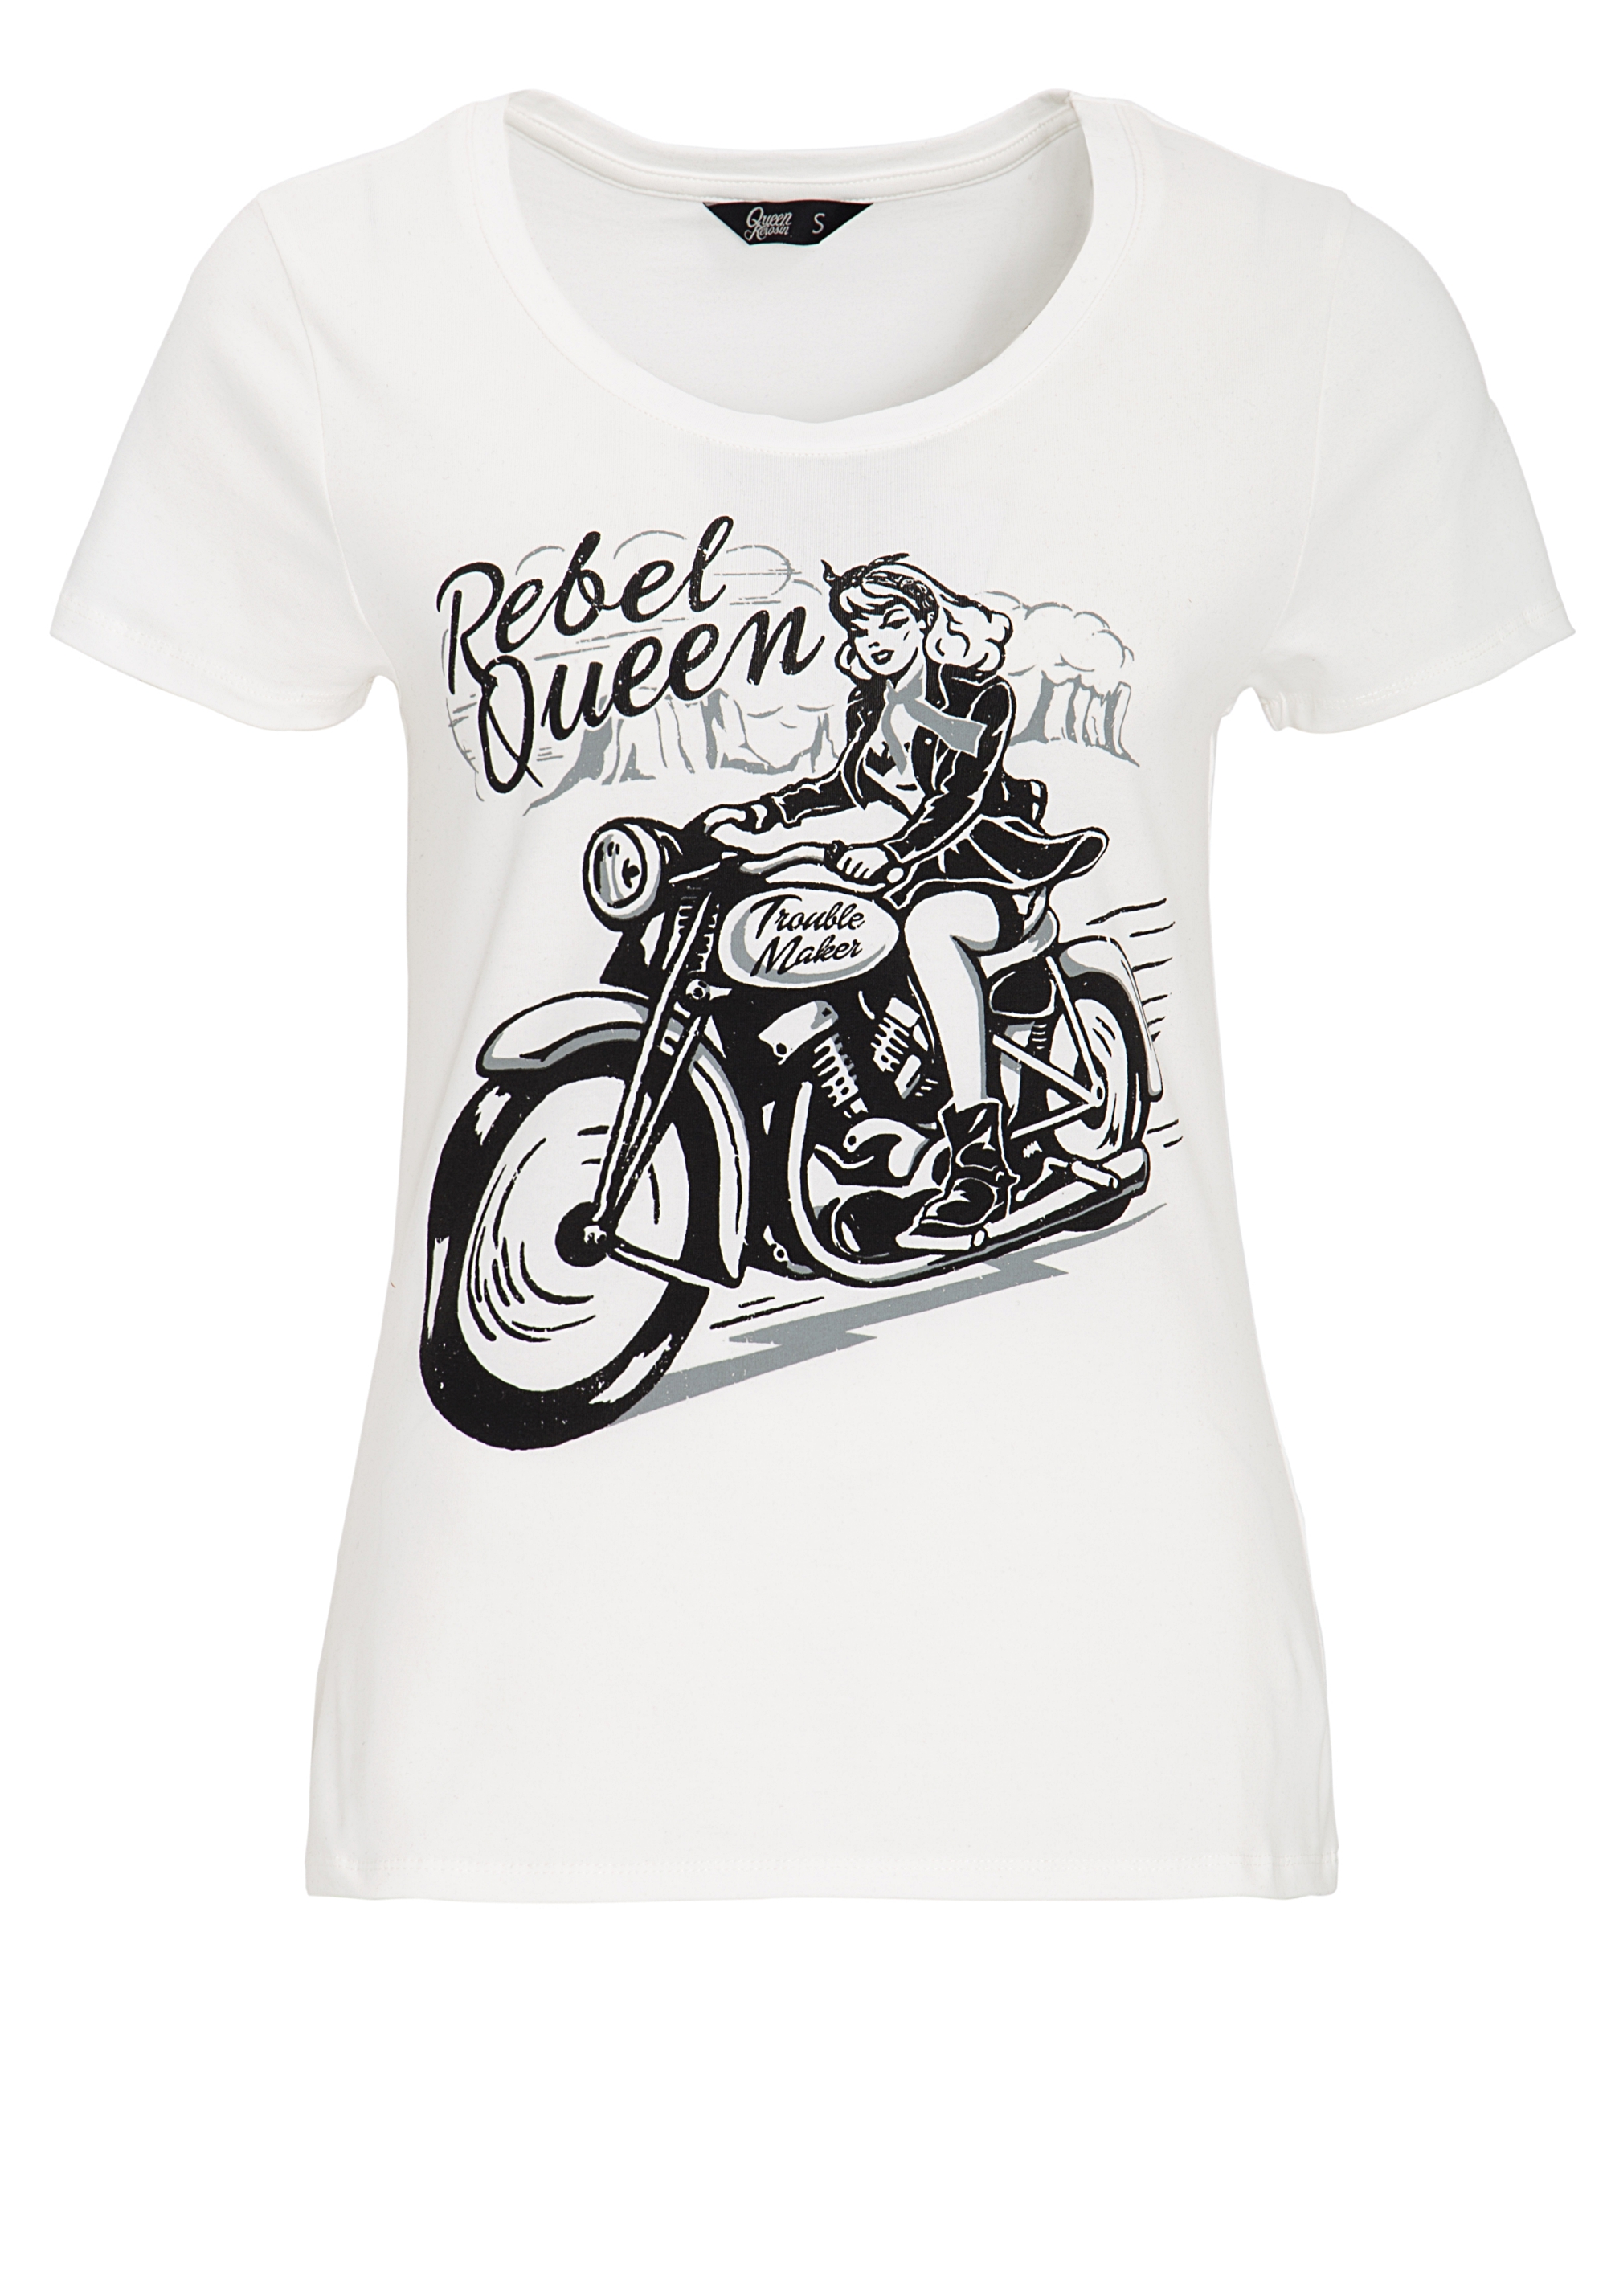 Queen Kerosin T-Shirt - Rebel Queen L